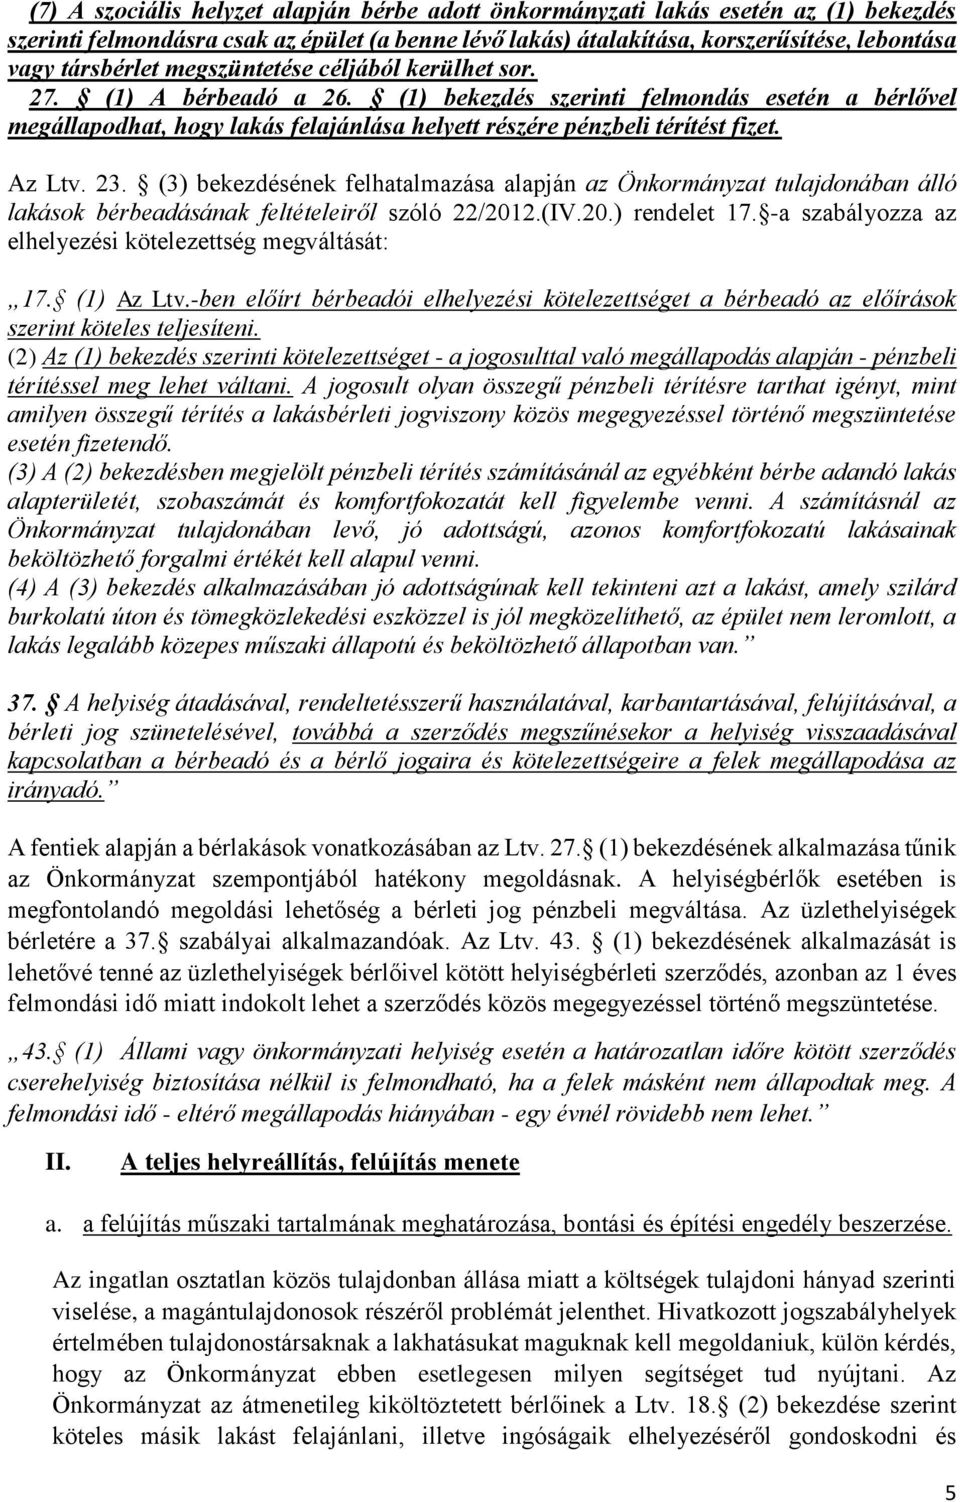 23. (3) bekezdésének felhatalmazása alapján az Önkormányzat tulajdonában álló lakások bérbeadásának feltételeiről szóló 22/2012.(IV.20.) rendelet 17.